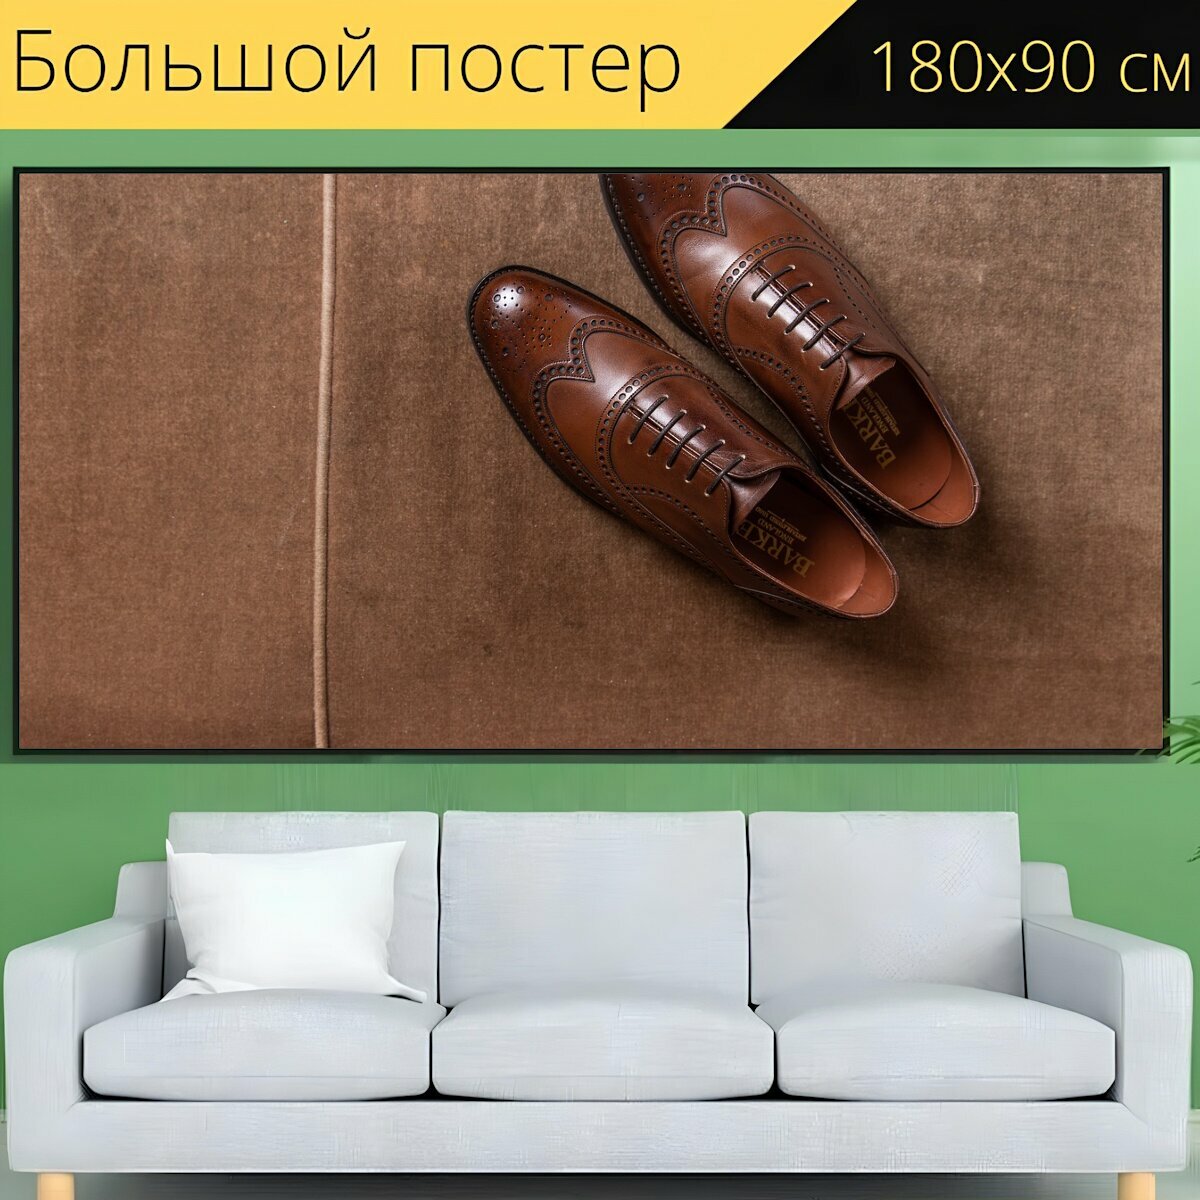 Большой постер "Броги, туфли, кожаные ботинки" 180 x 90 см. для интерьера